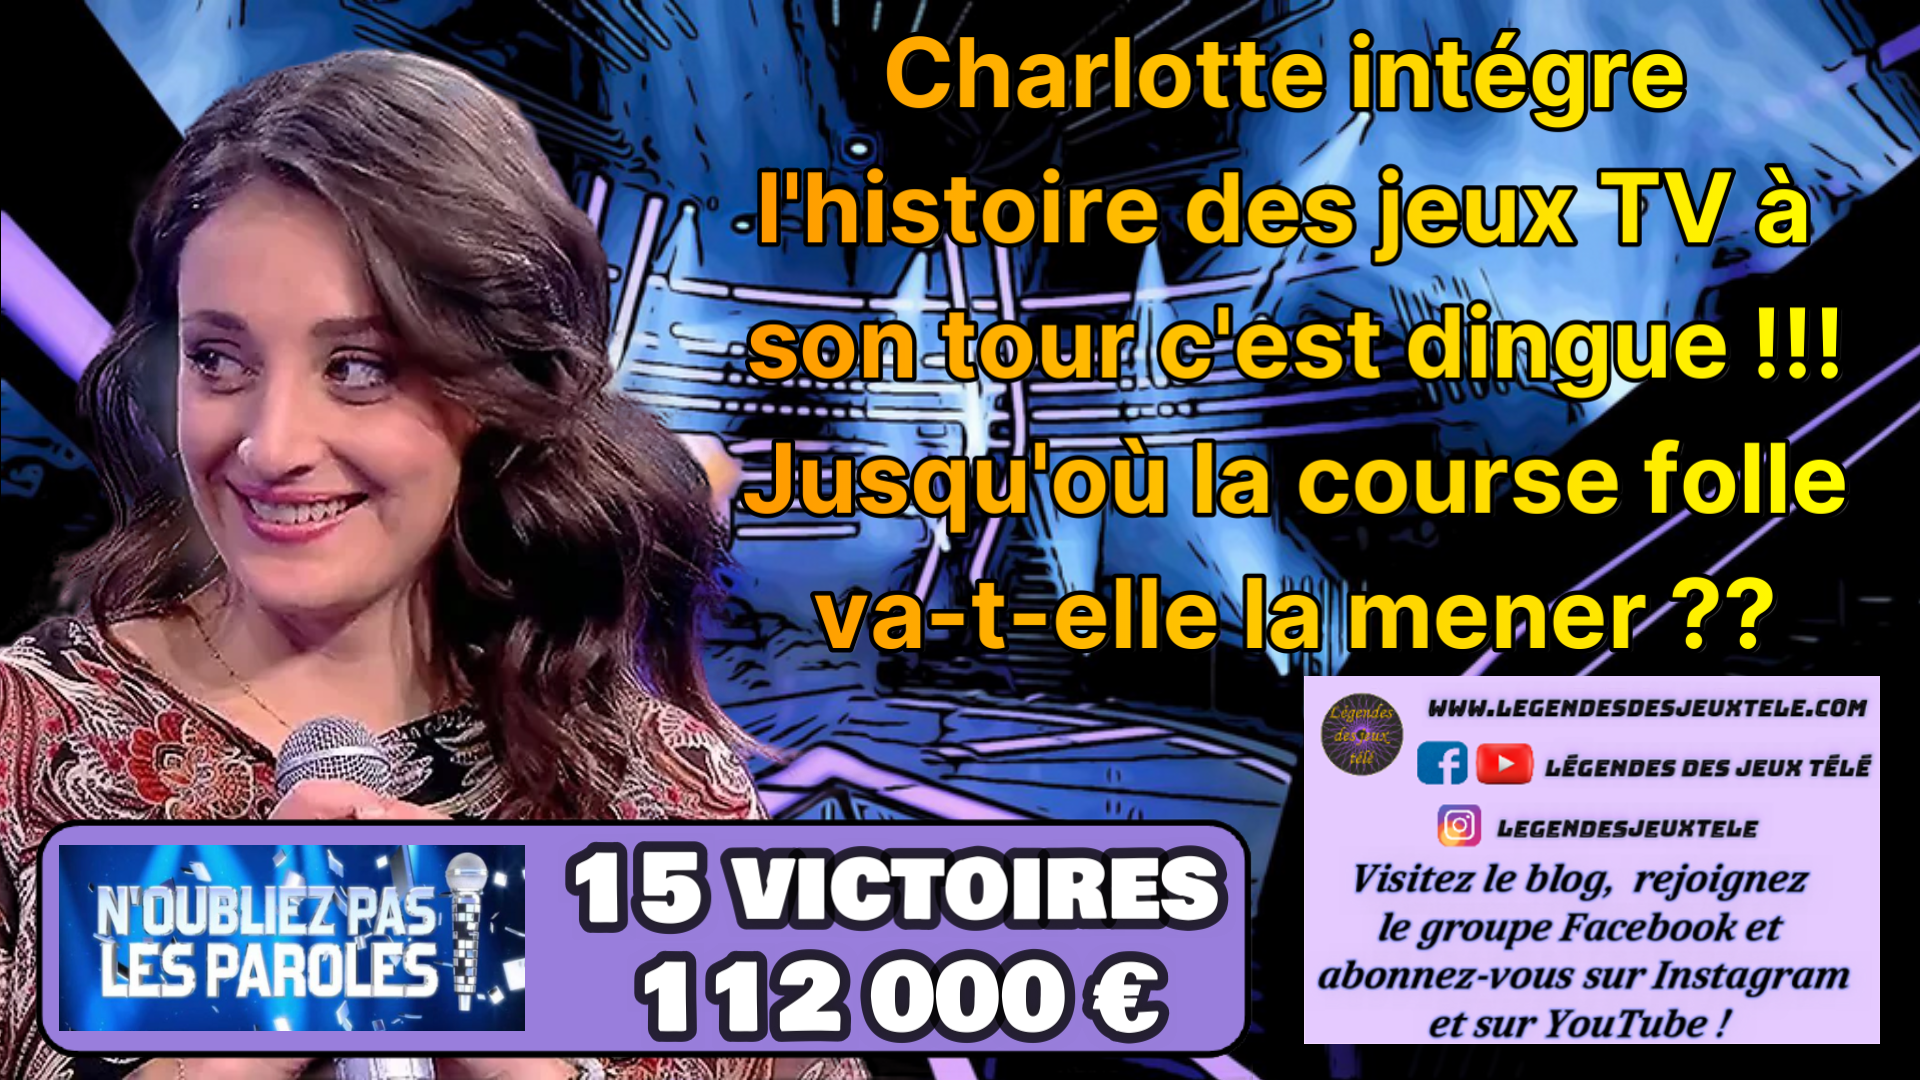 Il lui fallait un minimum de 110 000 € pour espérer n’intégrer au moins un classement associant tous les vainqueurs de tous les jeux TV, Charlotte marque 112 000 € c’est encore mieux !